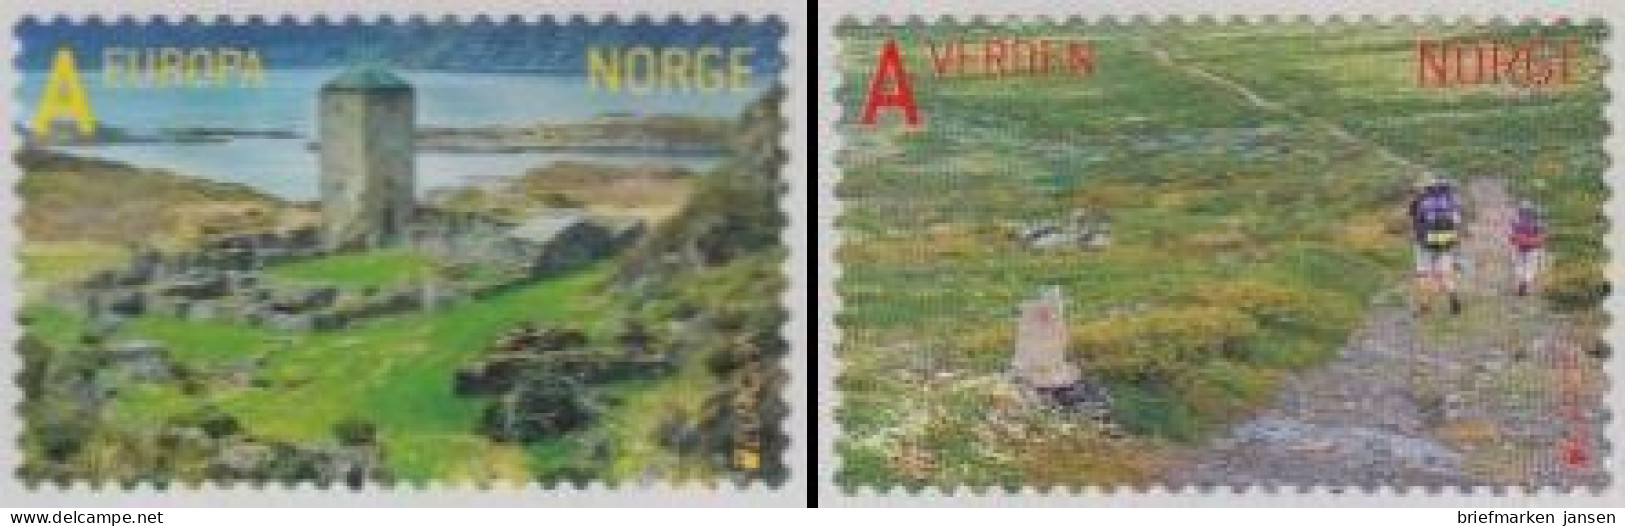 Norwegen Mi.Nr. 1783-84 Europa 12 Besuche, Pilgerweg Z.Nidarosdom Skl. (2 Werte) - Neufs